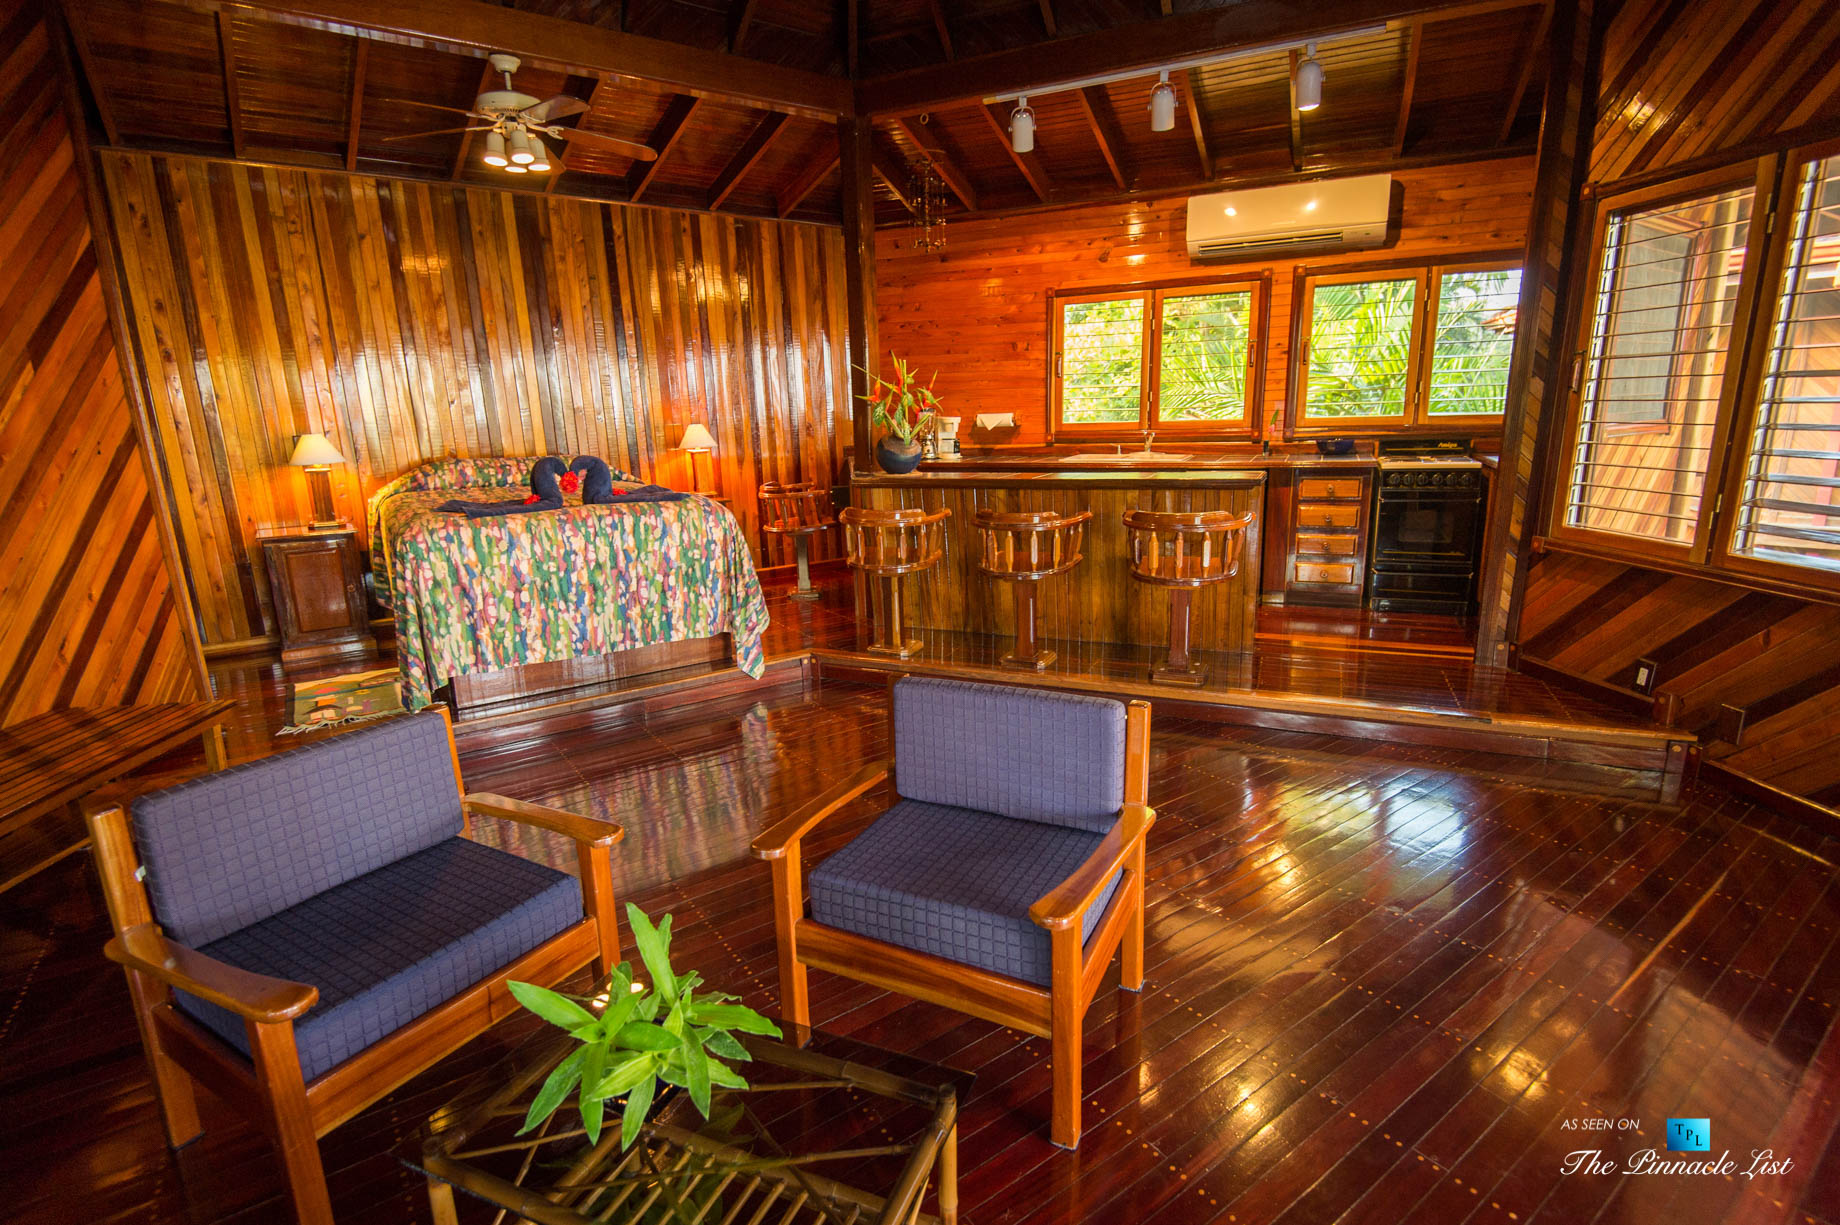 Tambor Tropical Beach Resort – Tambor, Puntarenas, Costa Rica – Suite Bed and Bar